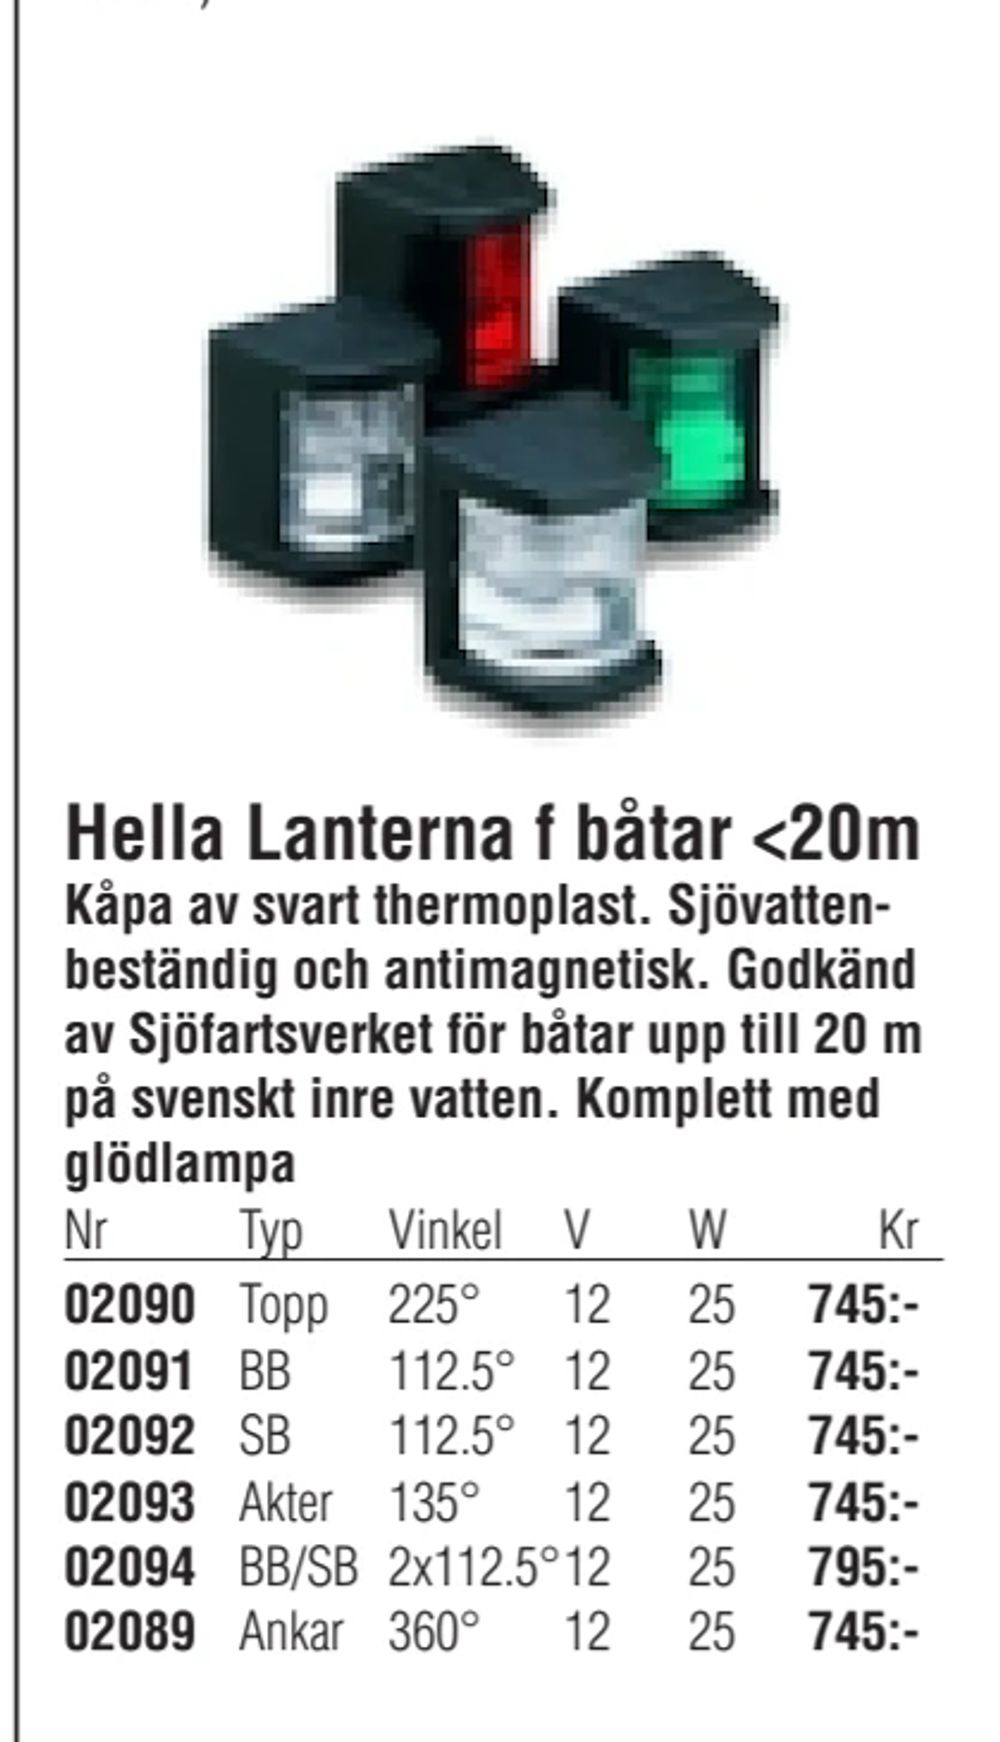 Erbjudanden på Hella Lanterna f båtar <20m från Erlandsons Brygga för 745 kr